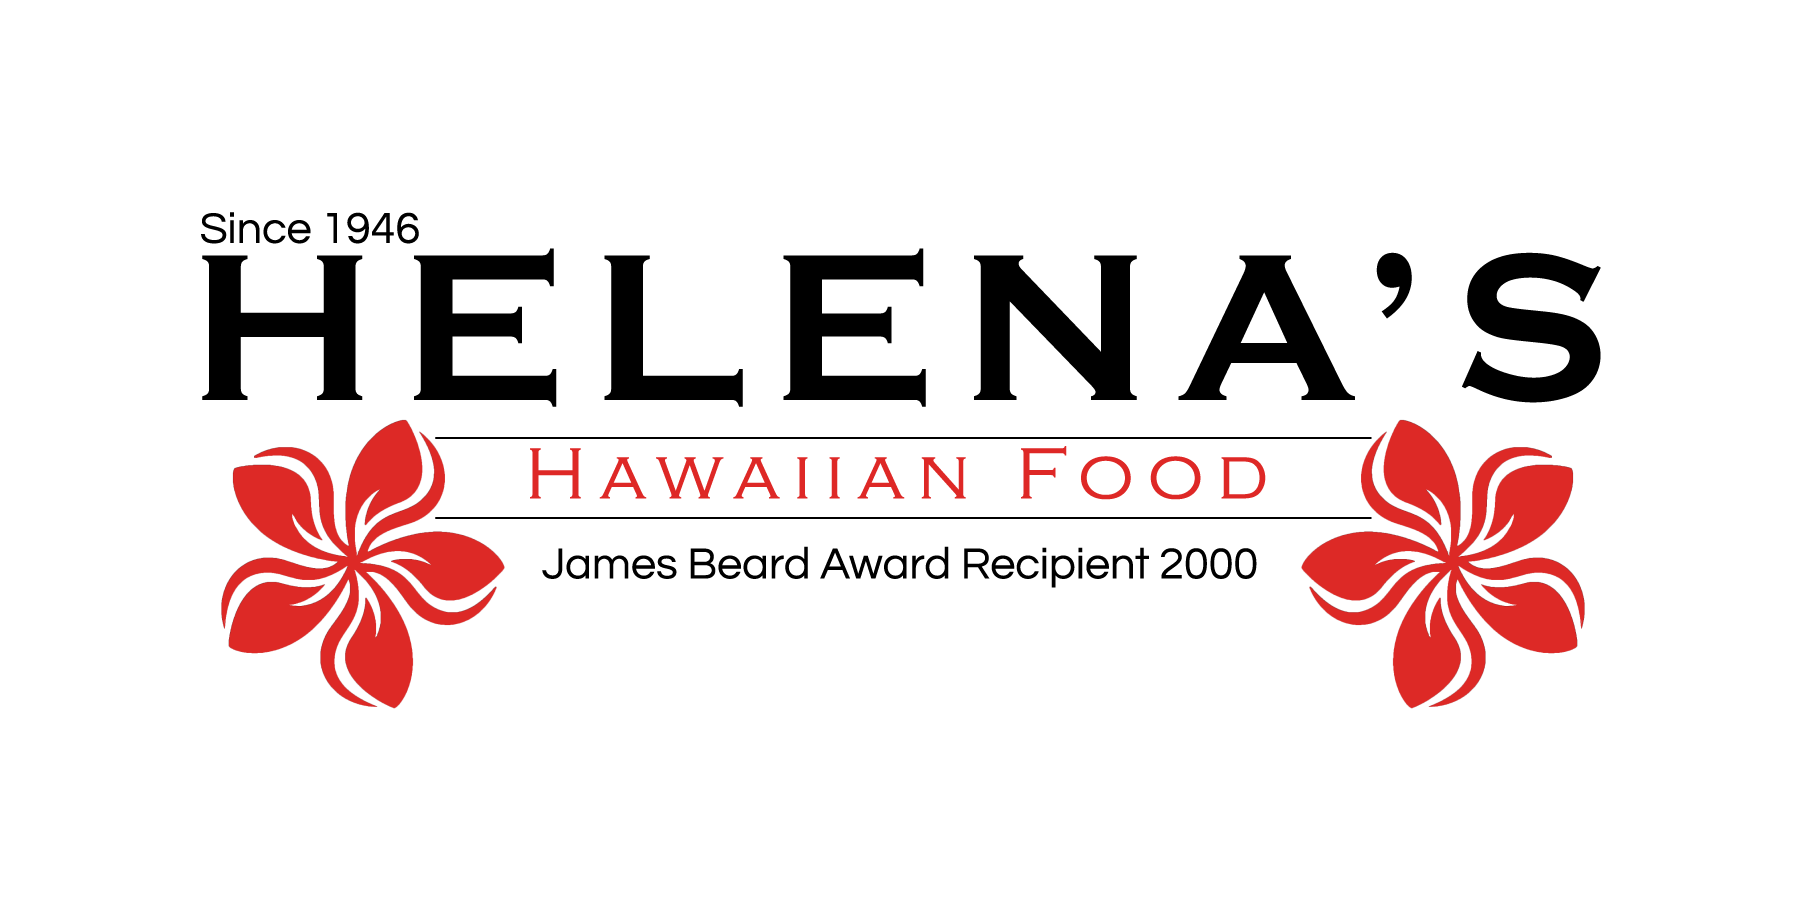 Since 1946. Hawaiian food. Lena Hawaii. Eimy’s Hawaii Happy Life 🏄🏻 eimy’s Hawaii Happy Life.